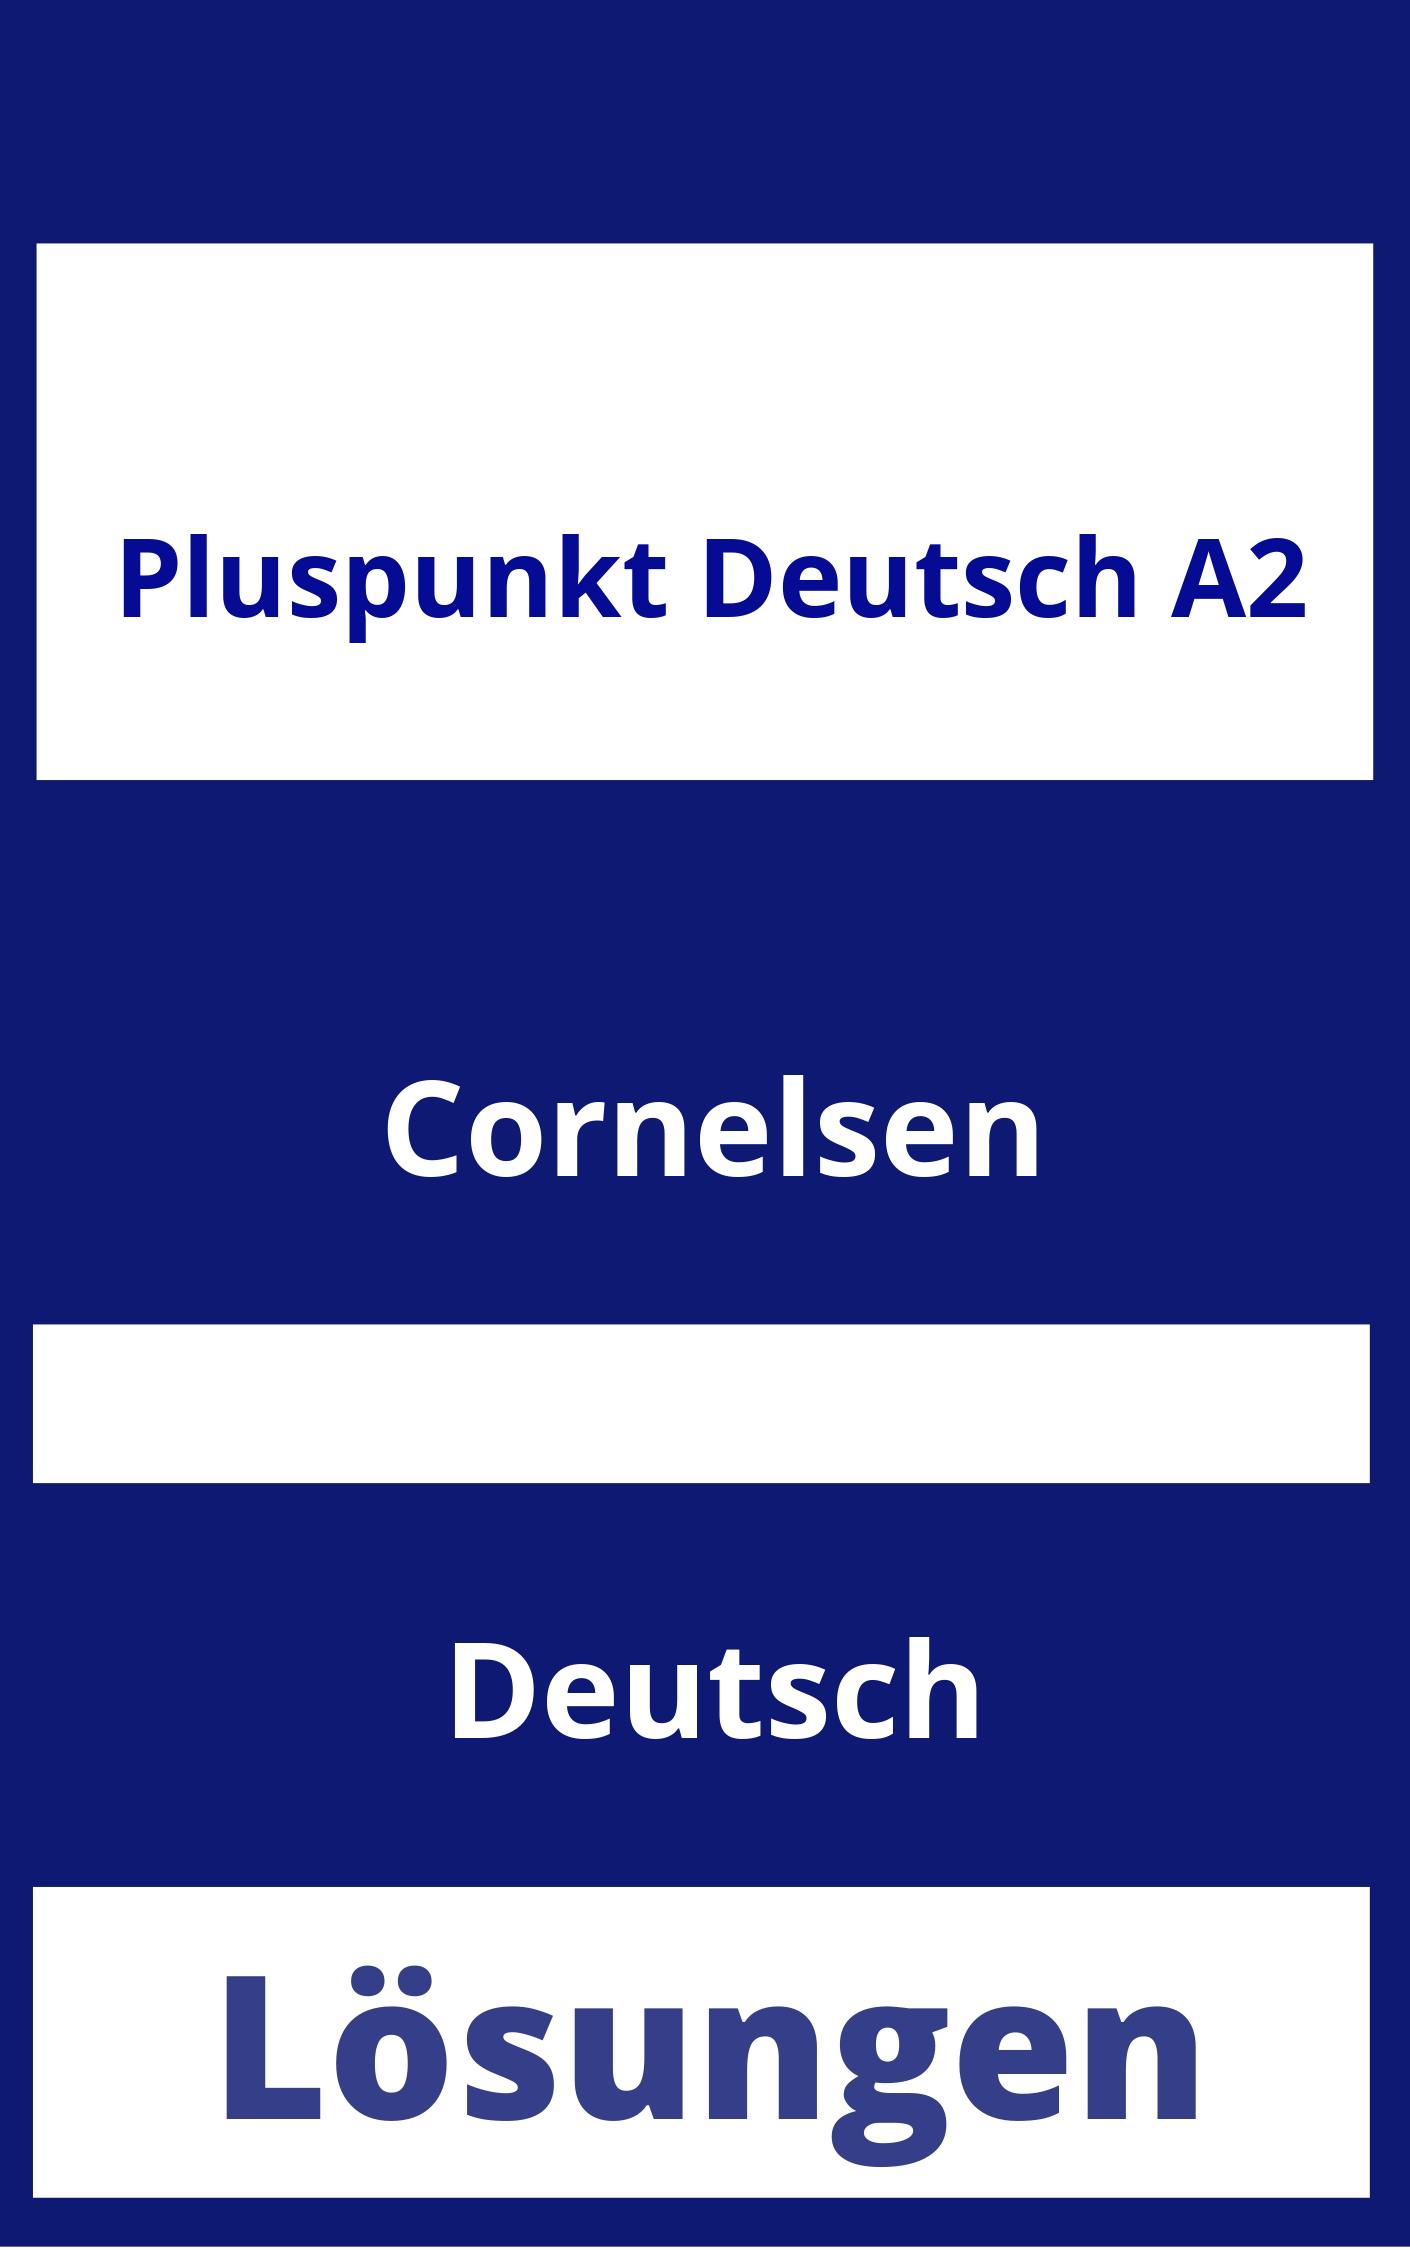 Pluspunkt Deutsch A2